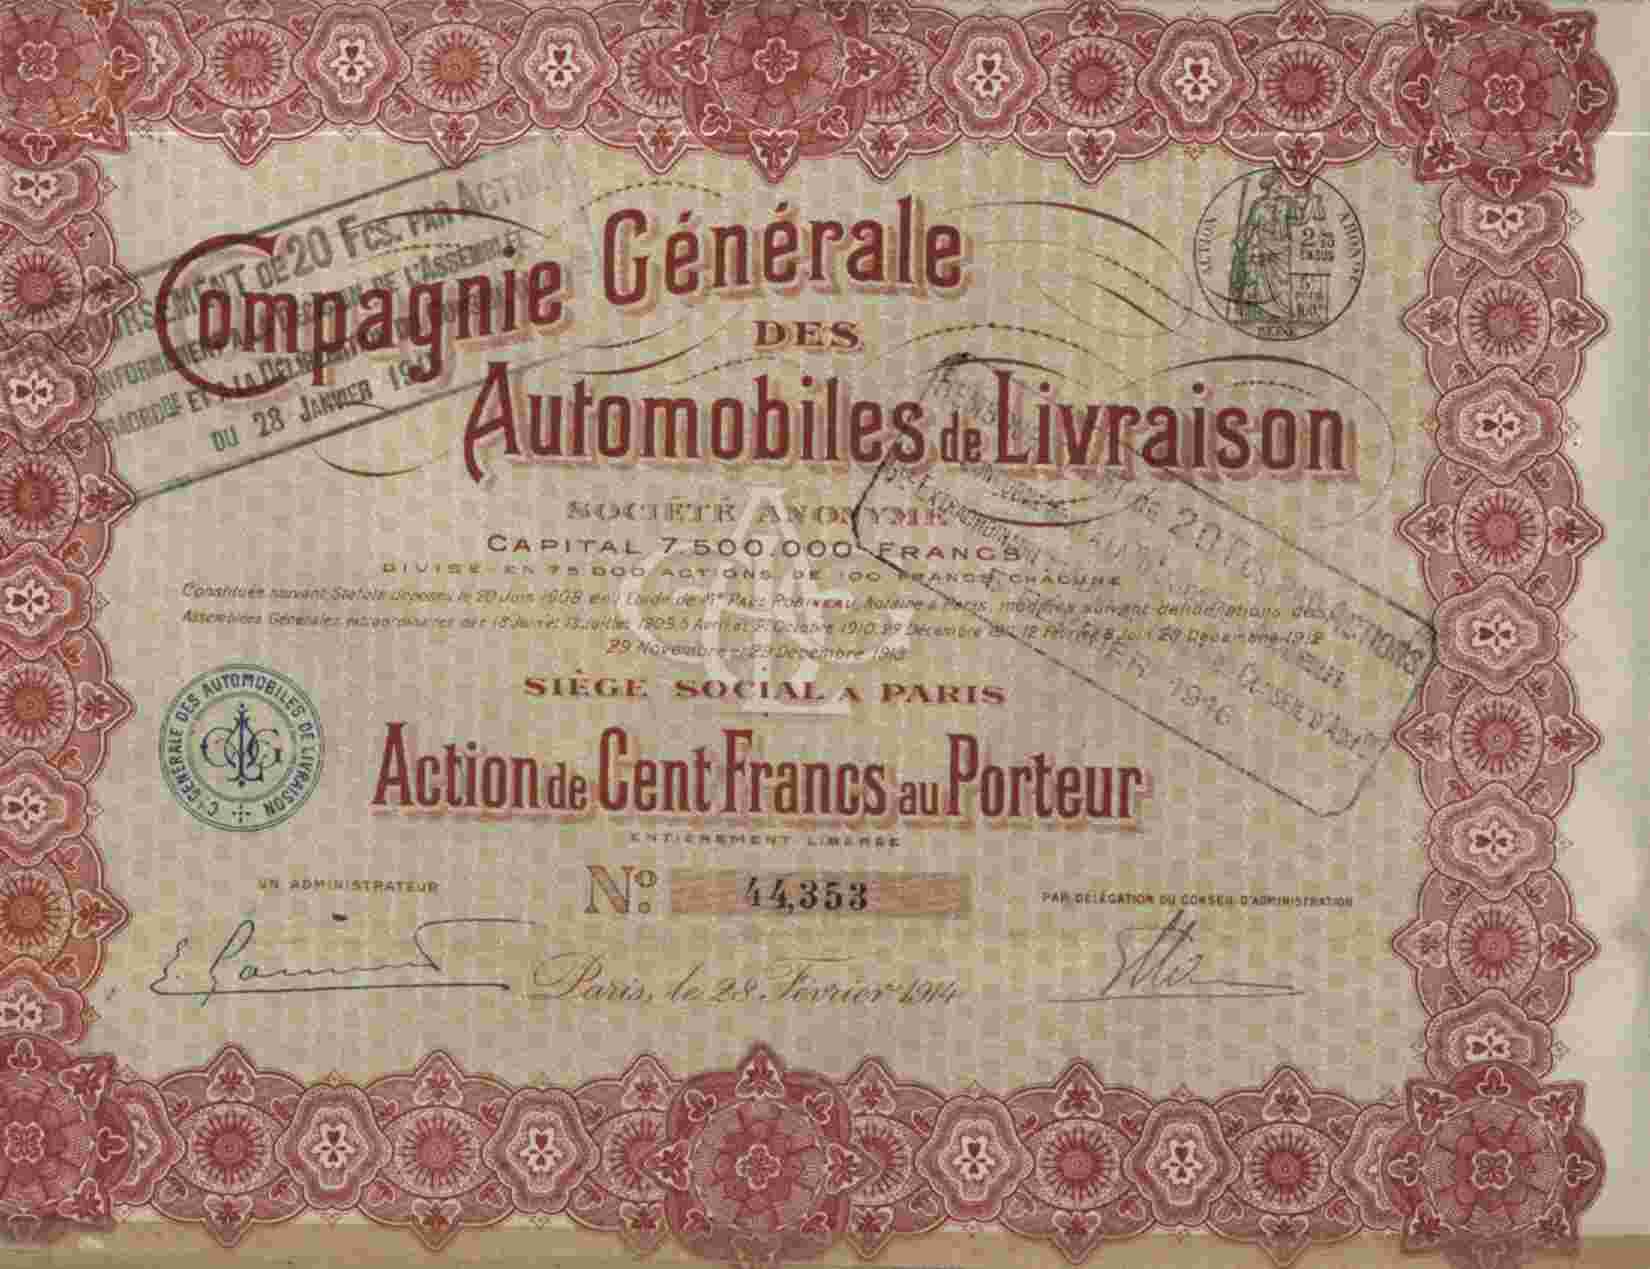 CIE GENERALE DES AUTOMOBILES DE LIVRAISON - Automobile